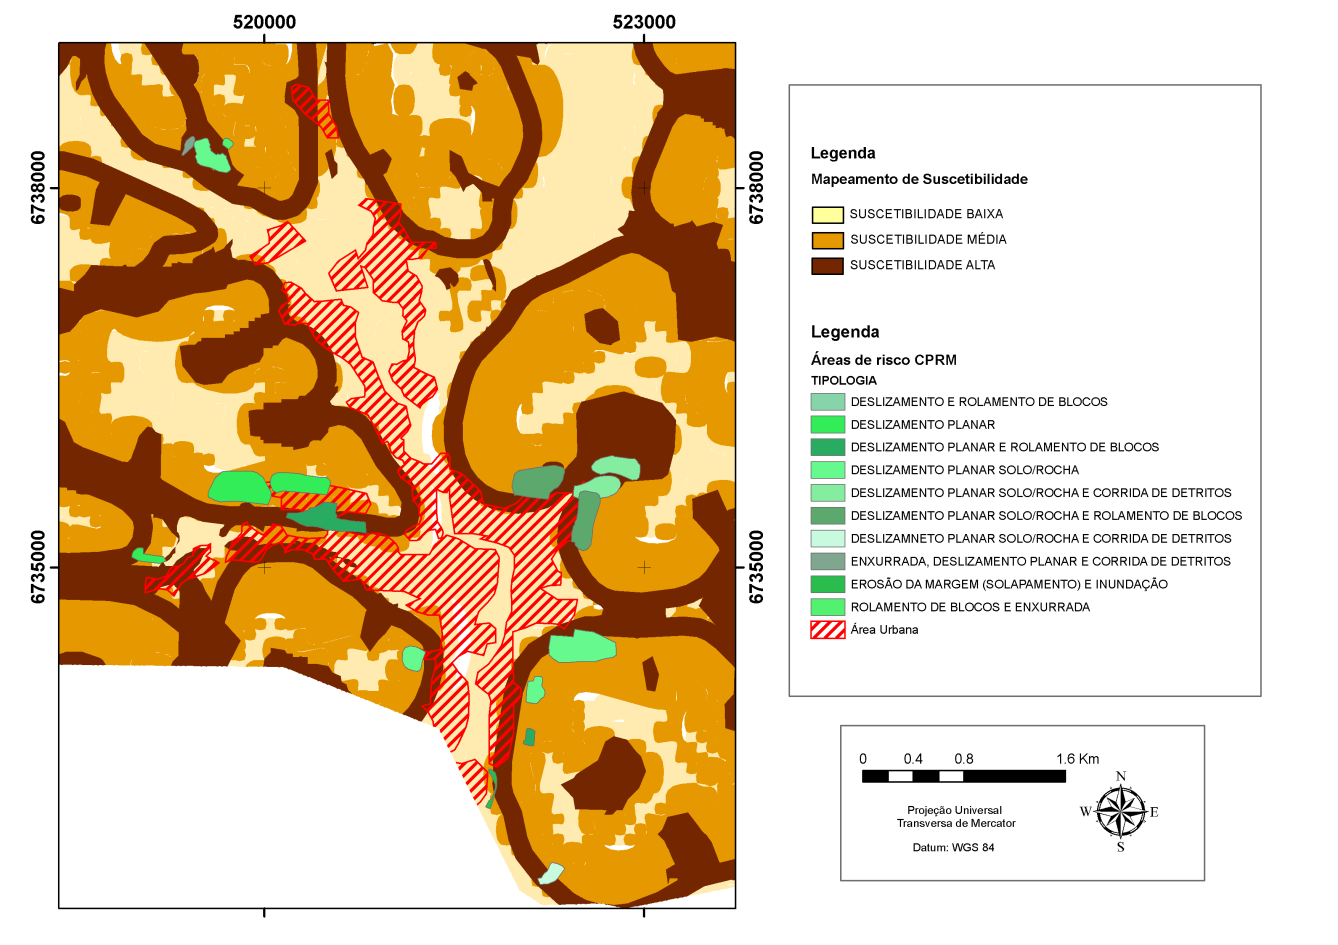 Figura 7- Mapeamento de suscetibilidade a movimentos de massa na área urbana do município de Três Coroas e zoneamento de risco elaborado pela CPRM. Elaboração: Riffel, E. S., 2016.